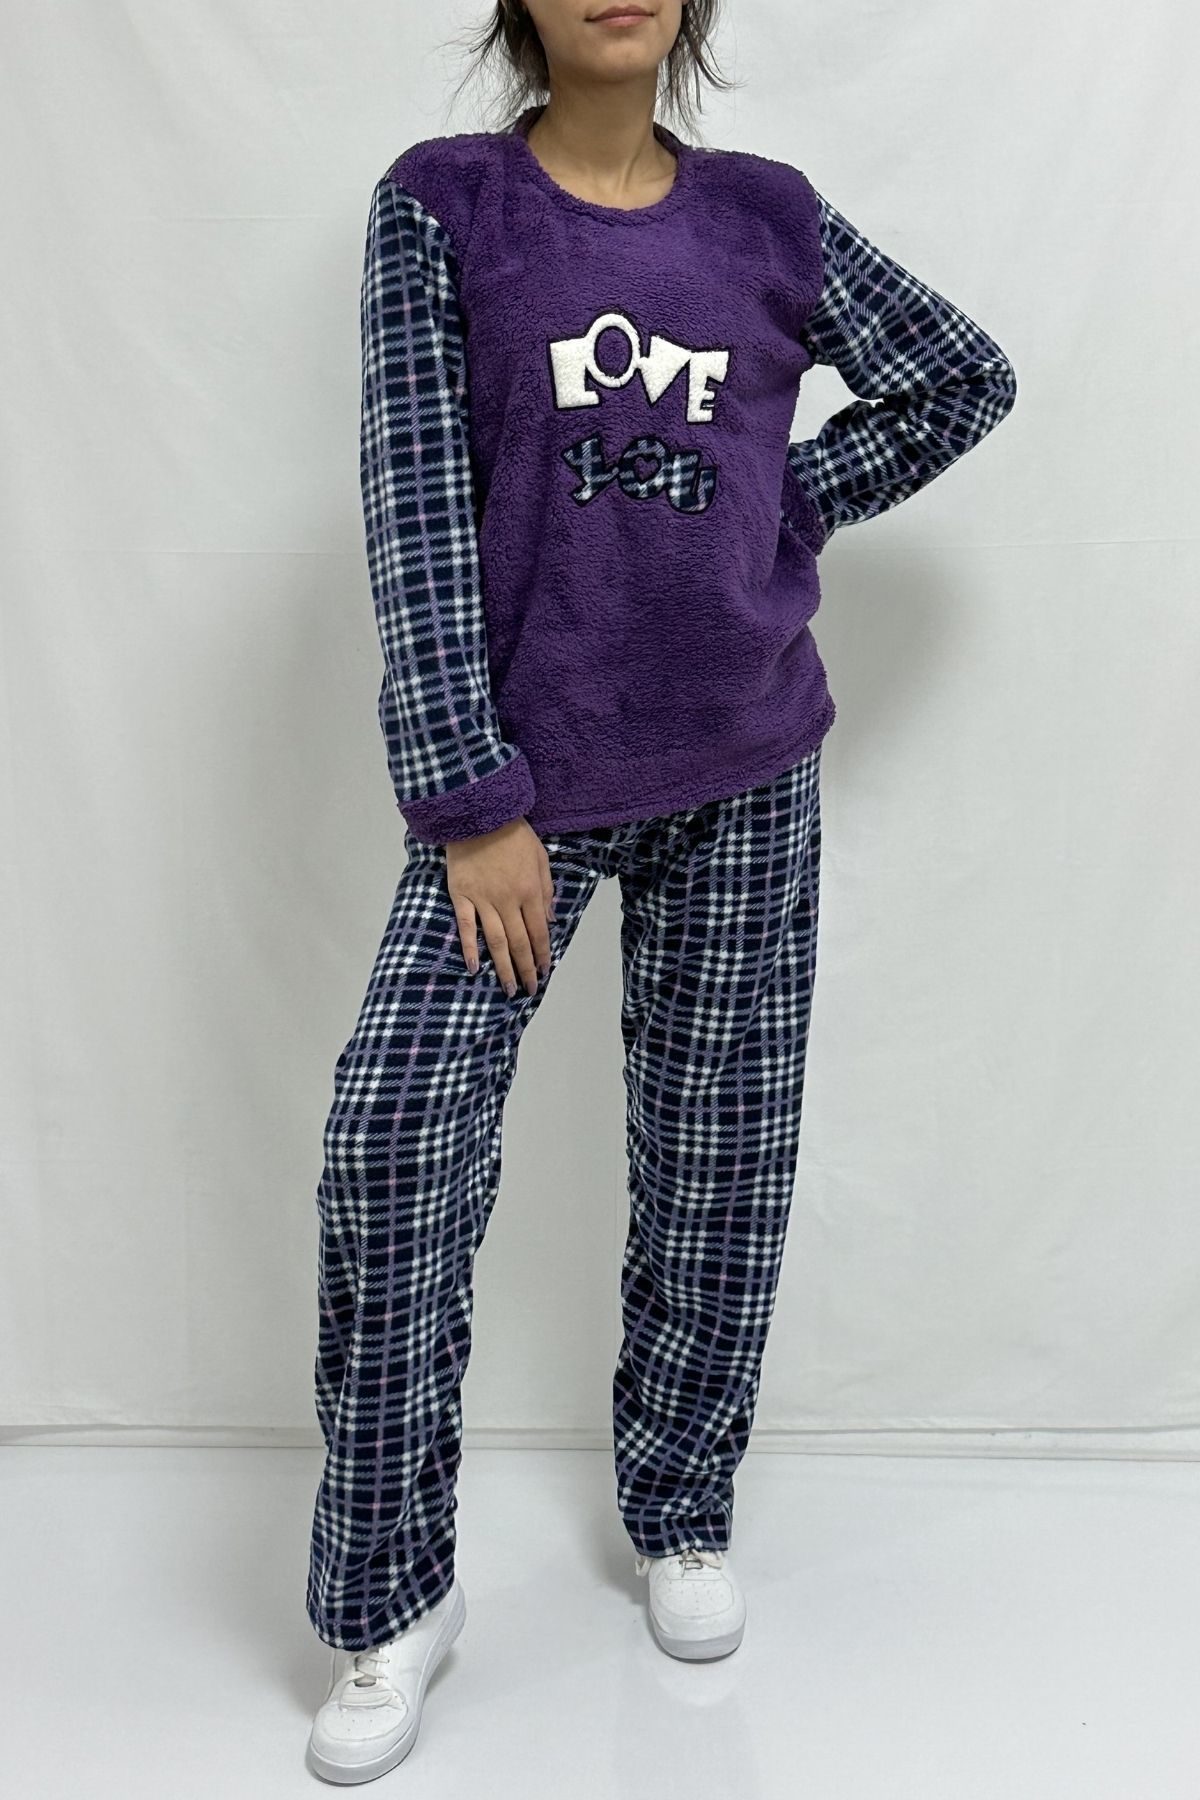 CLZ944 Love Nakışlı Pijama Takımı Mor